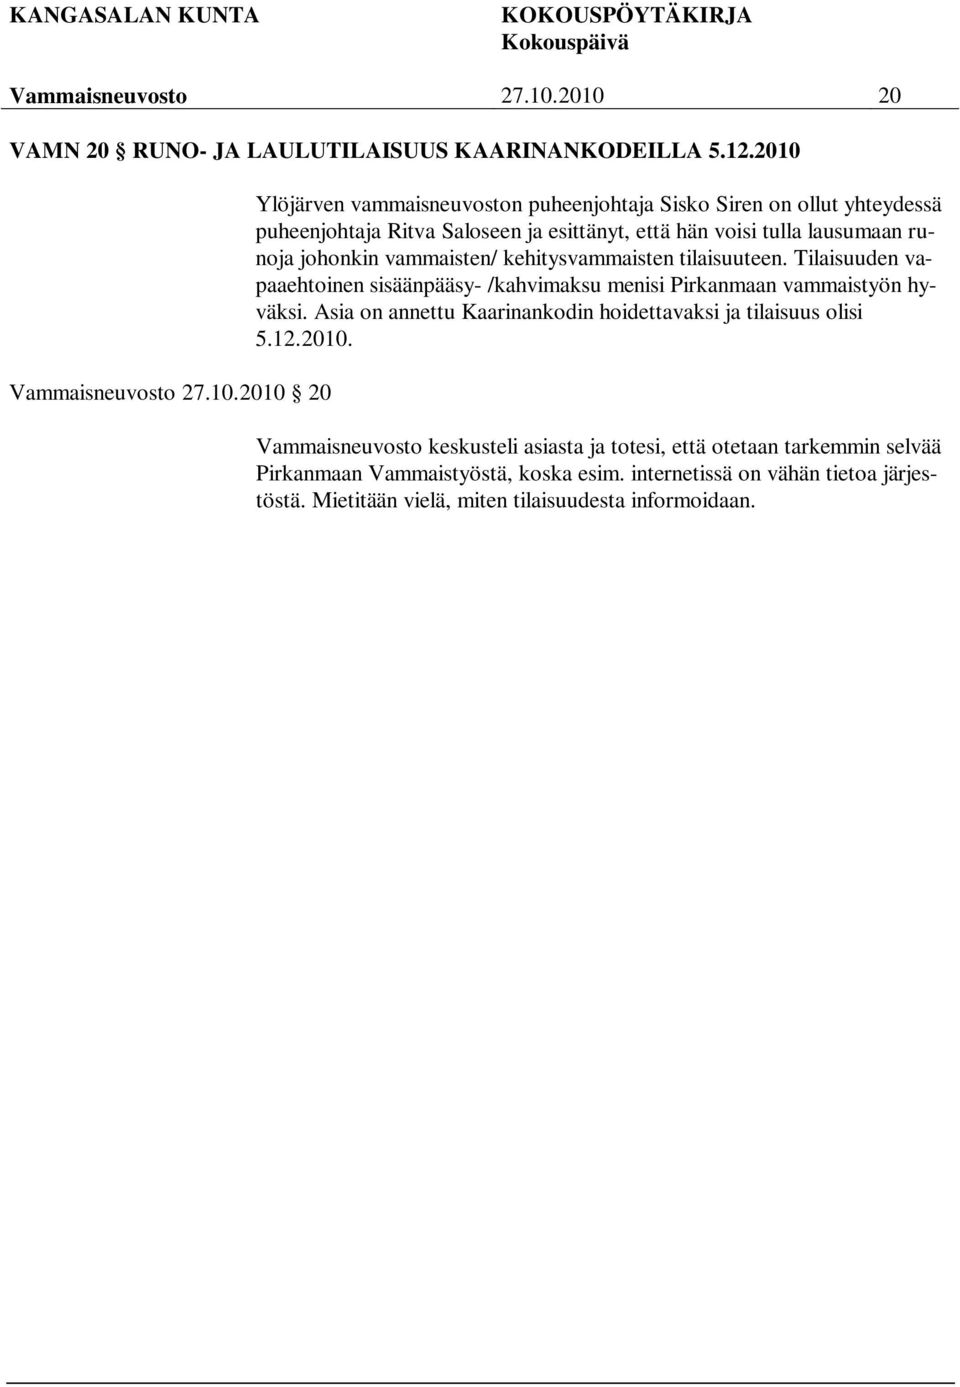 2010 2010 20 Ylöjärven vammaisneuvoston puheenjohtaja Sisko Siren on ollut yhteydessä puheenjohtaja Ritva Saloseen ja esittänyt, että hän voisi tulla lausumaan